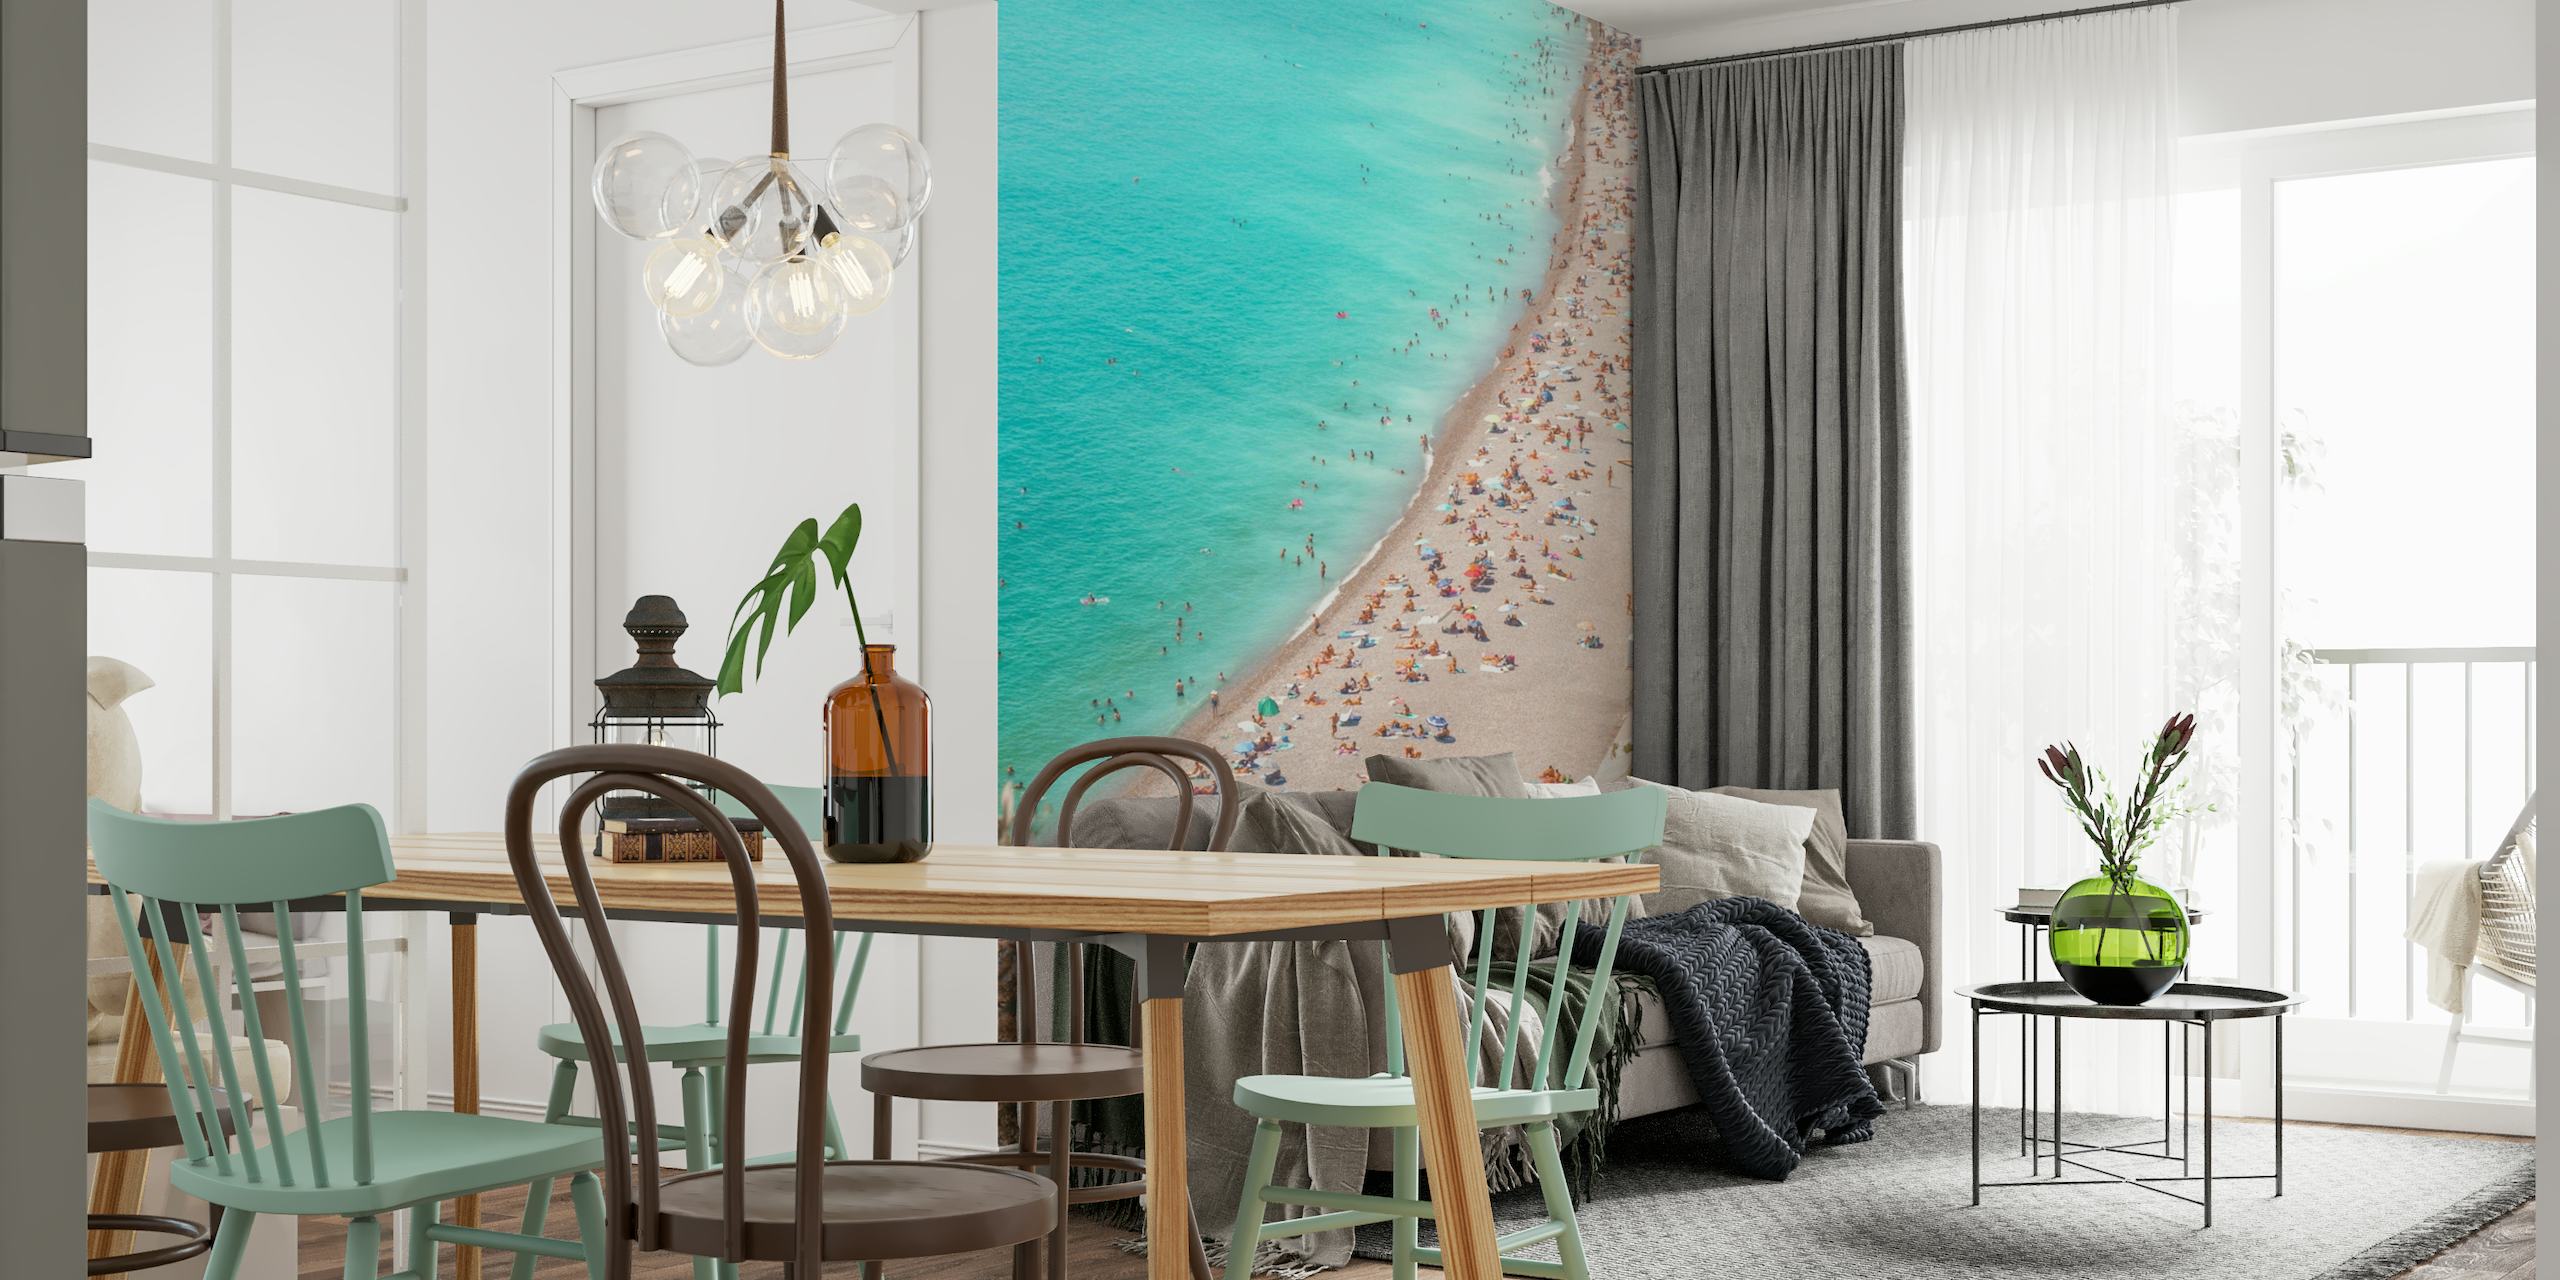 Fotomural vinílico de parede com cena de praia da Riviera Mediterrânea com águas azuis claras e praias arenosas